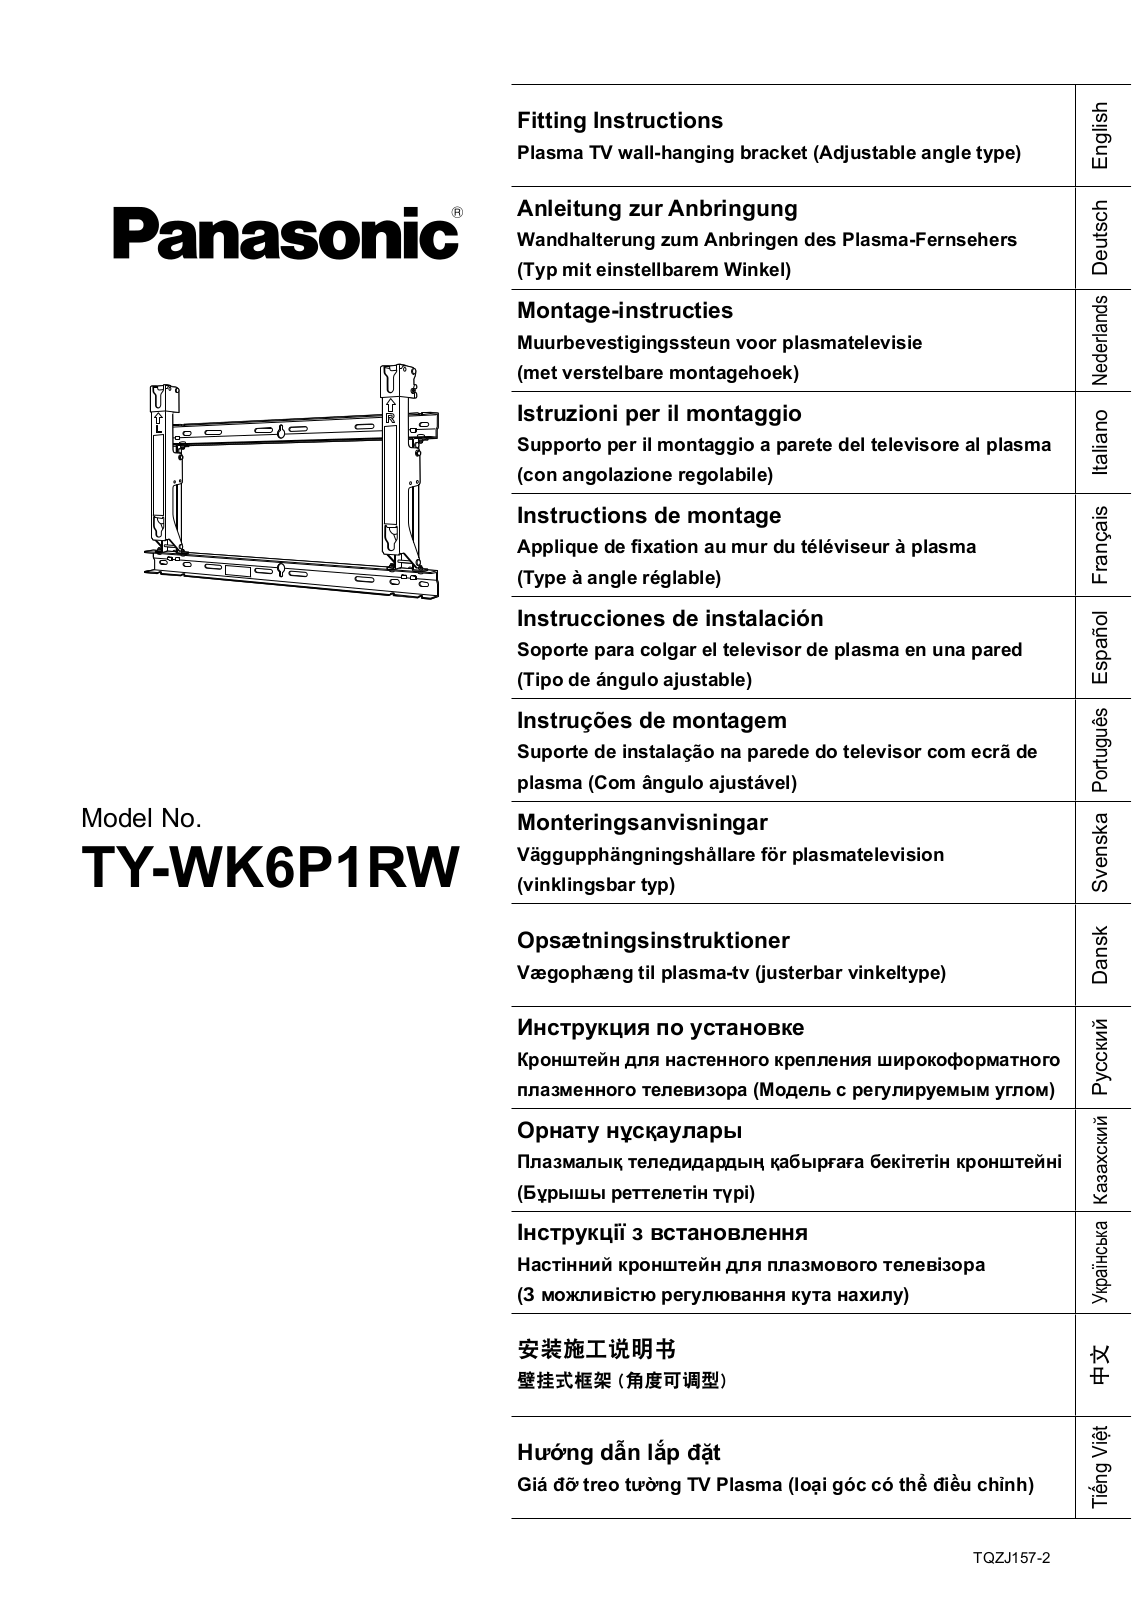 Panasonic TYWK6P1RW User Manual